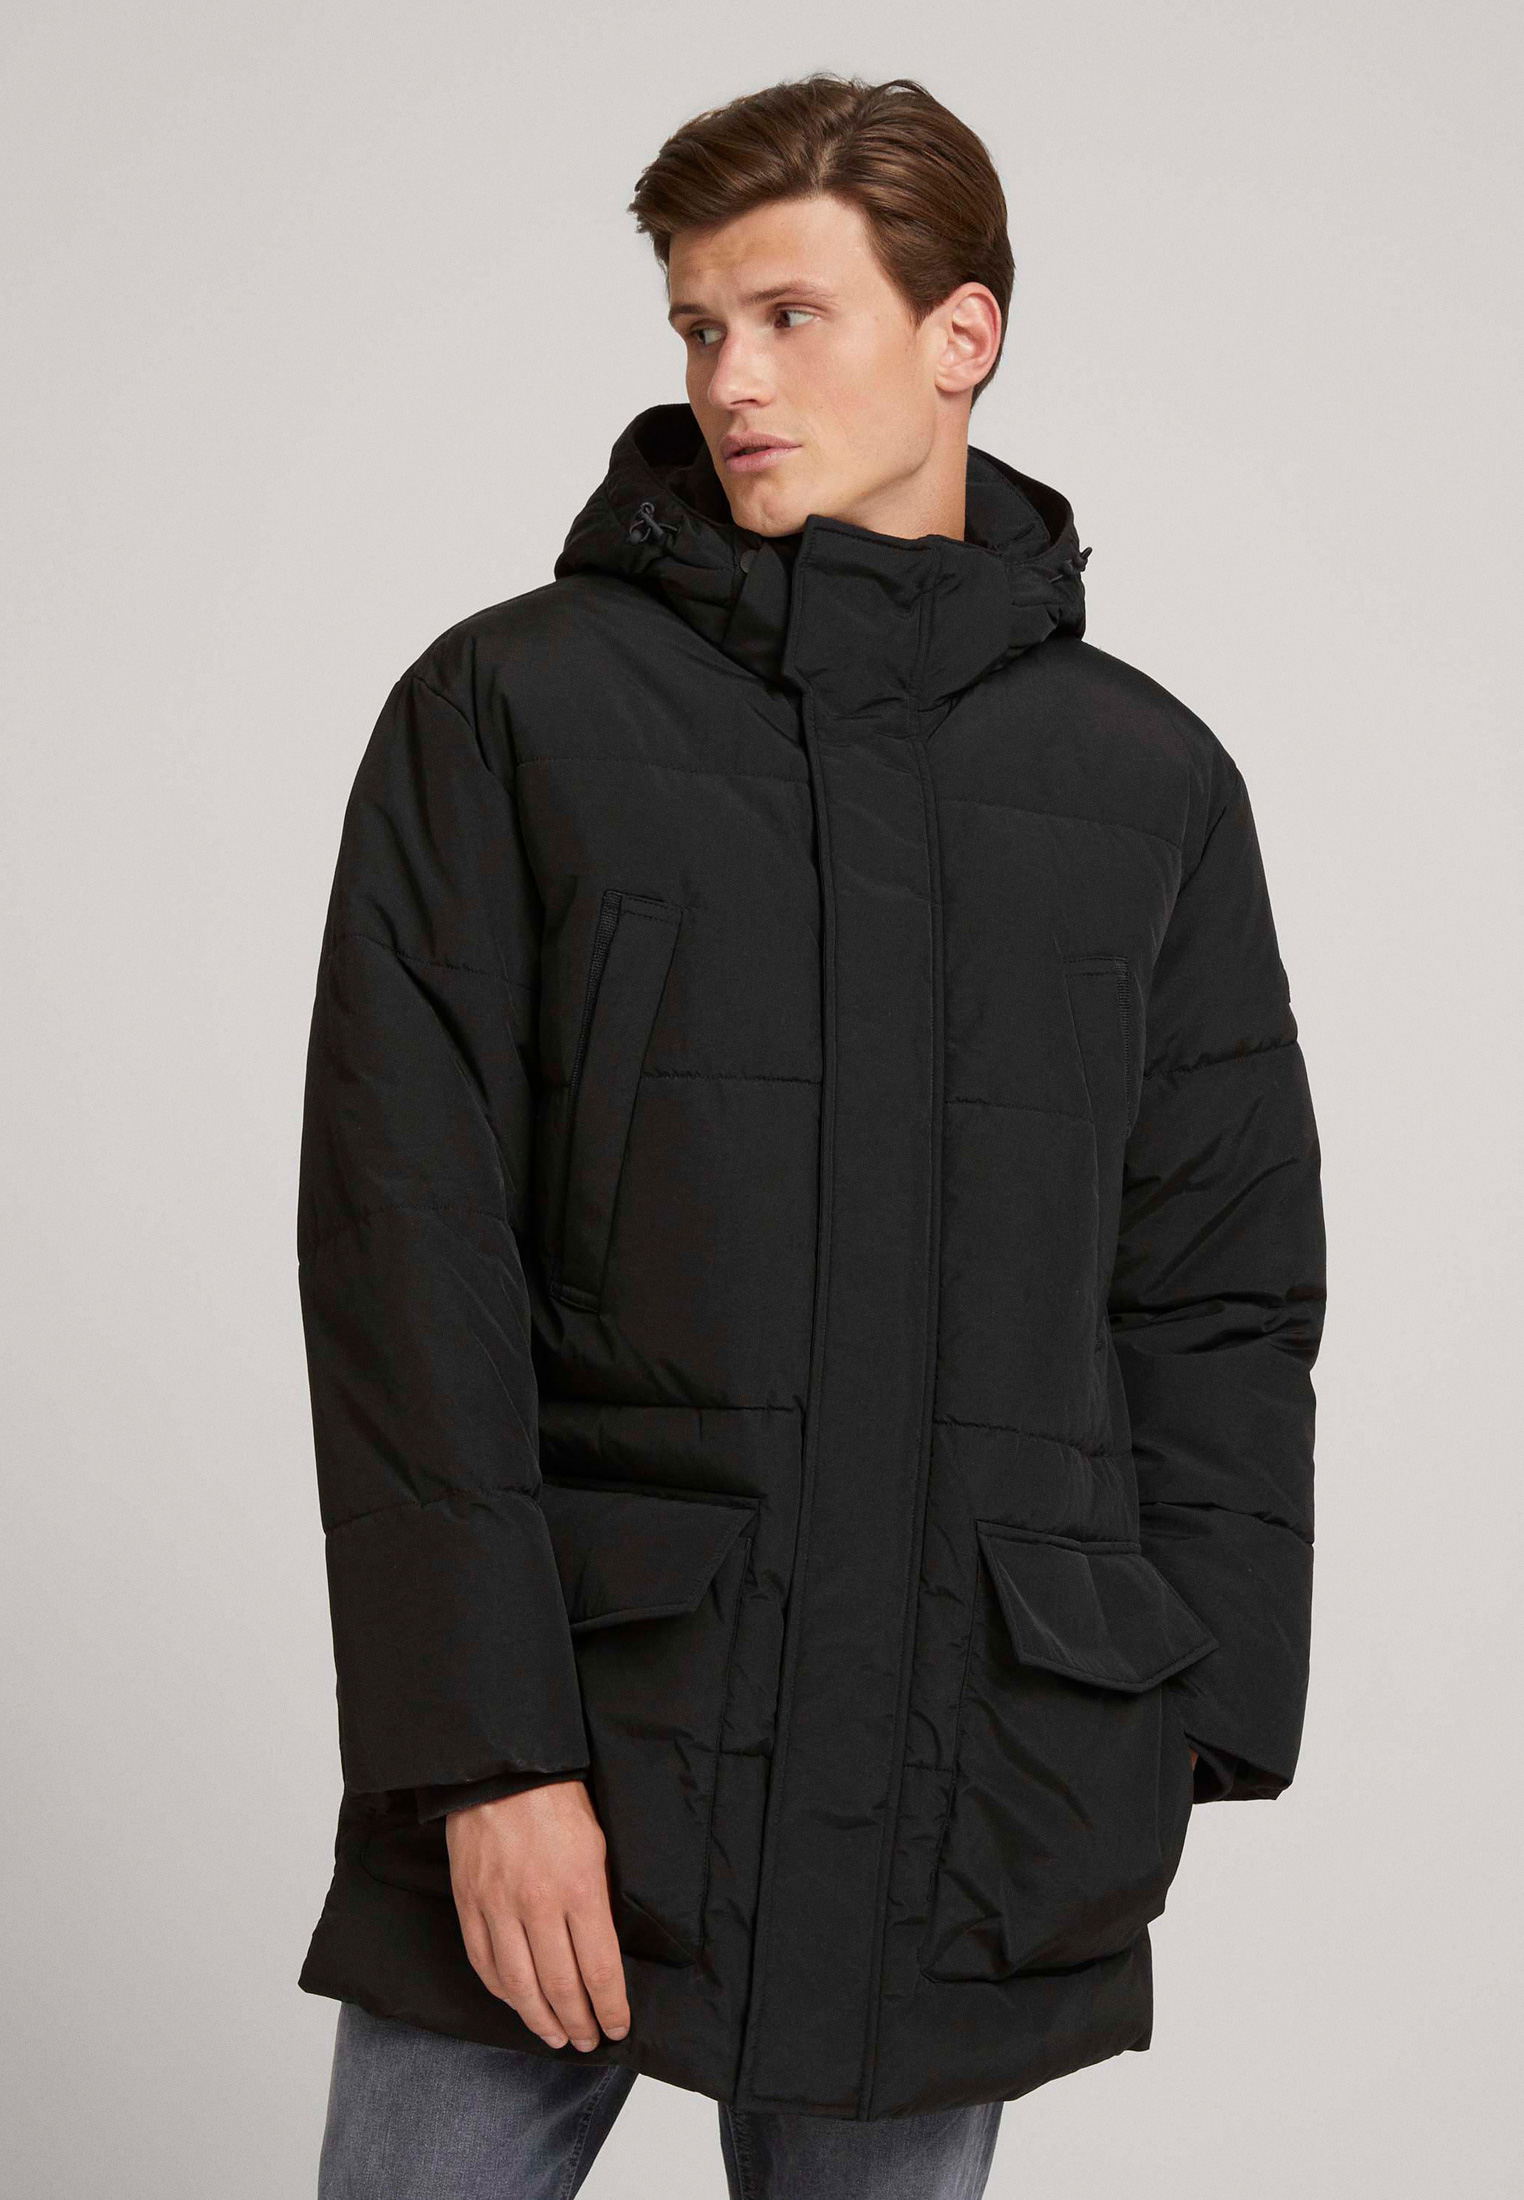 Утепленная куртка мужская Tom Tailor Denim 1026688 купить за 9410 руб.